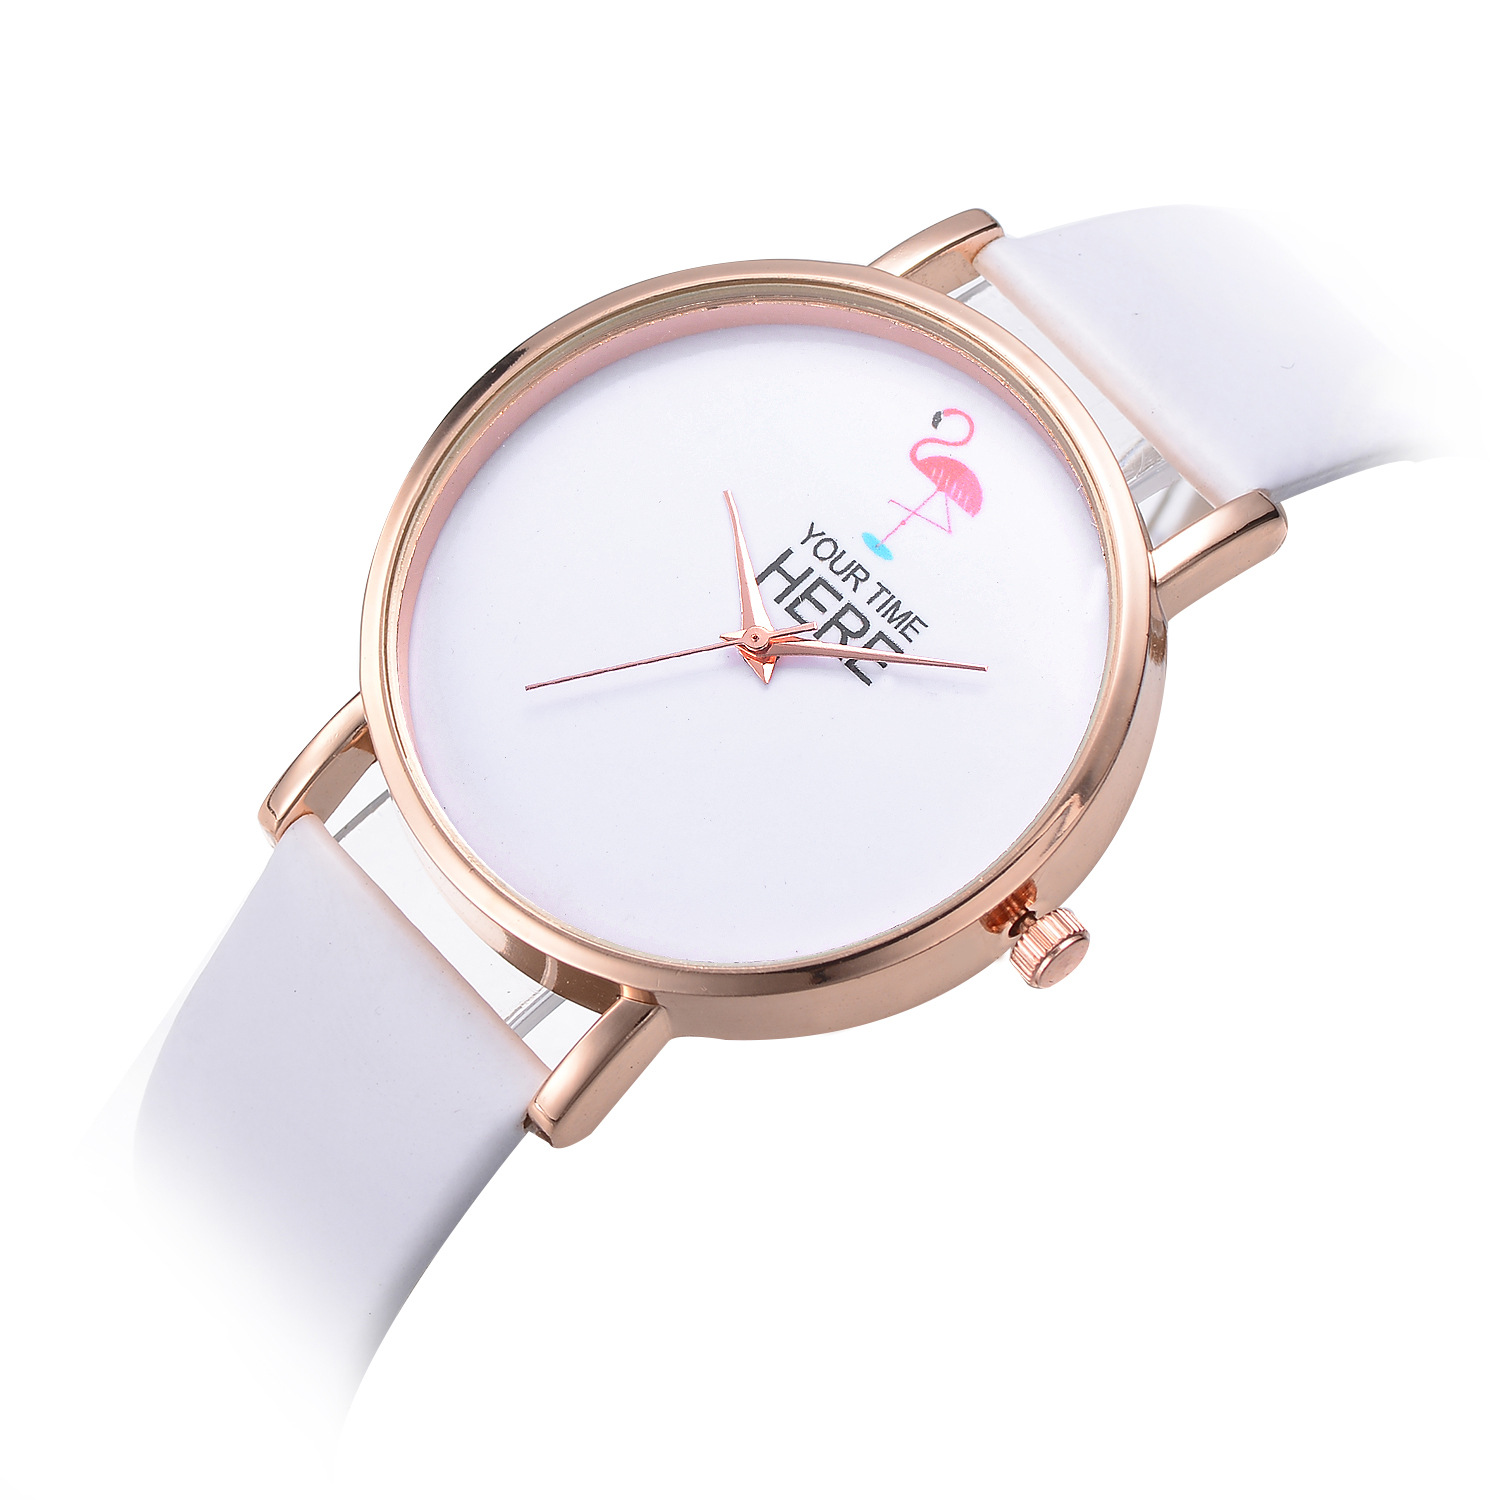 

Повседневный стиль Женское Наручные часы Розовое золото Чехол Кожаный ремешок Кварцевые часы